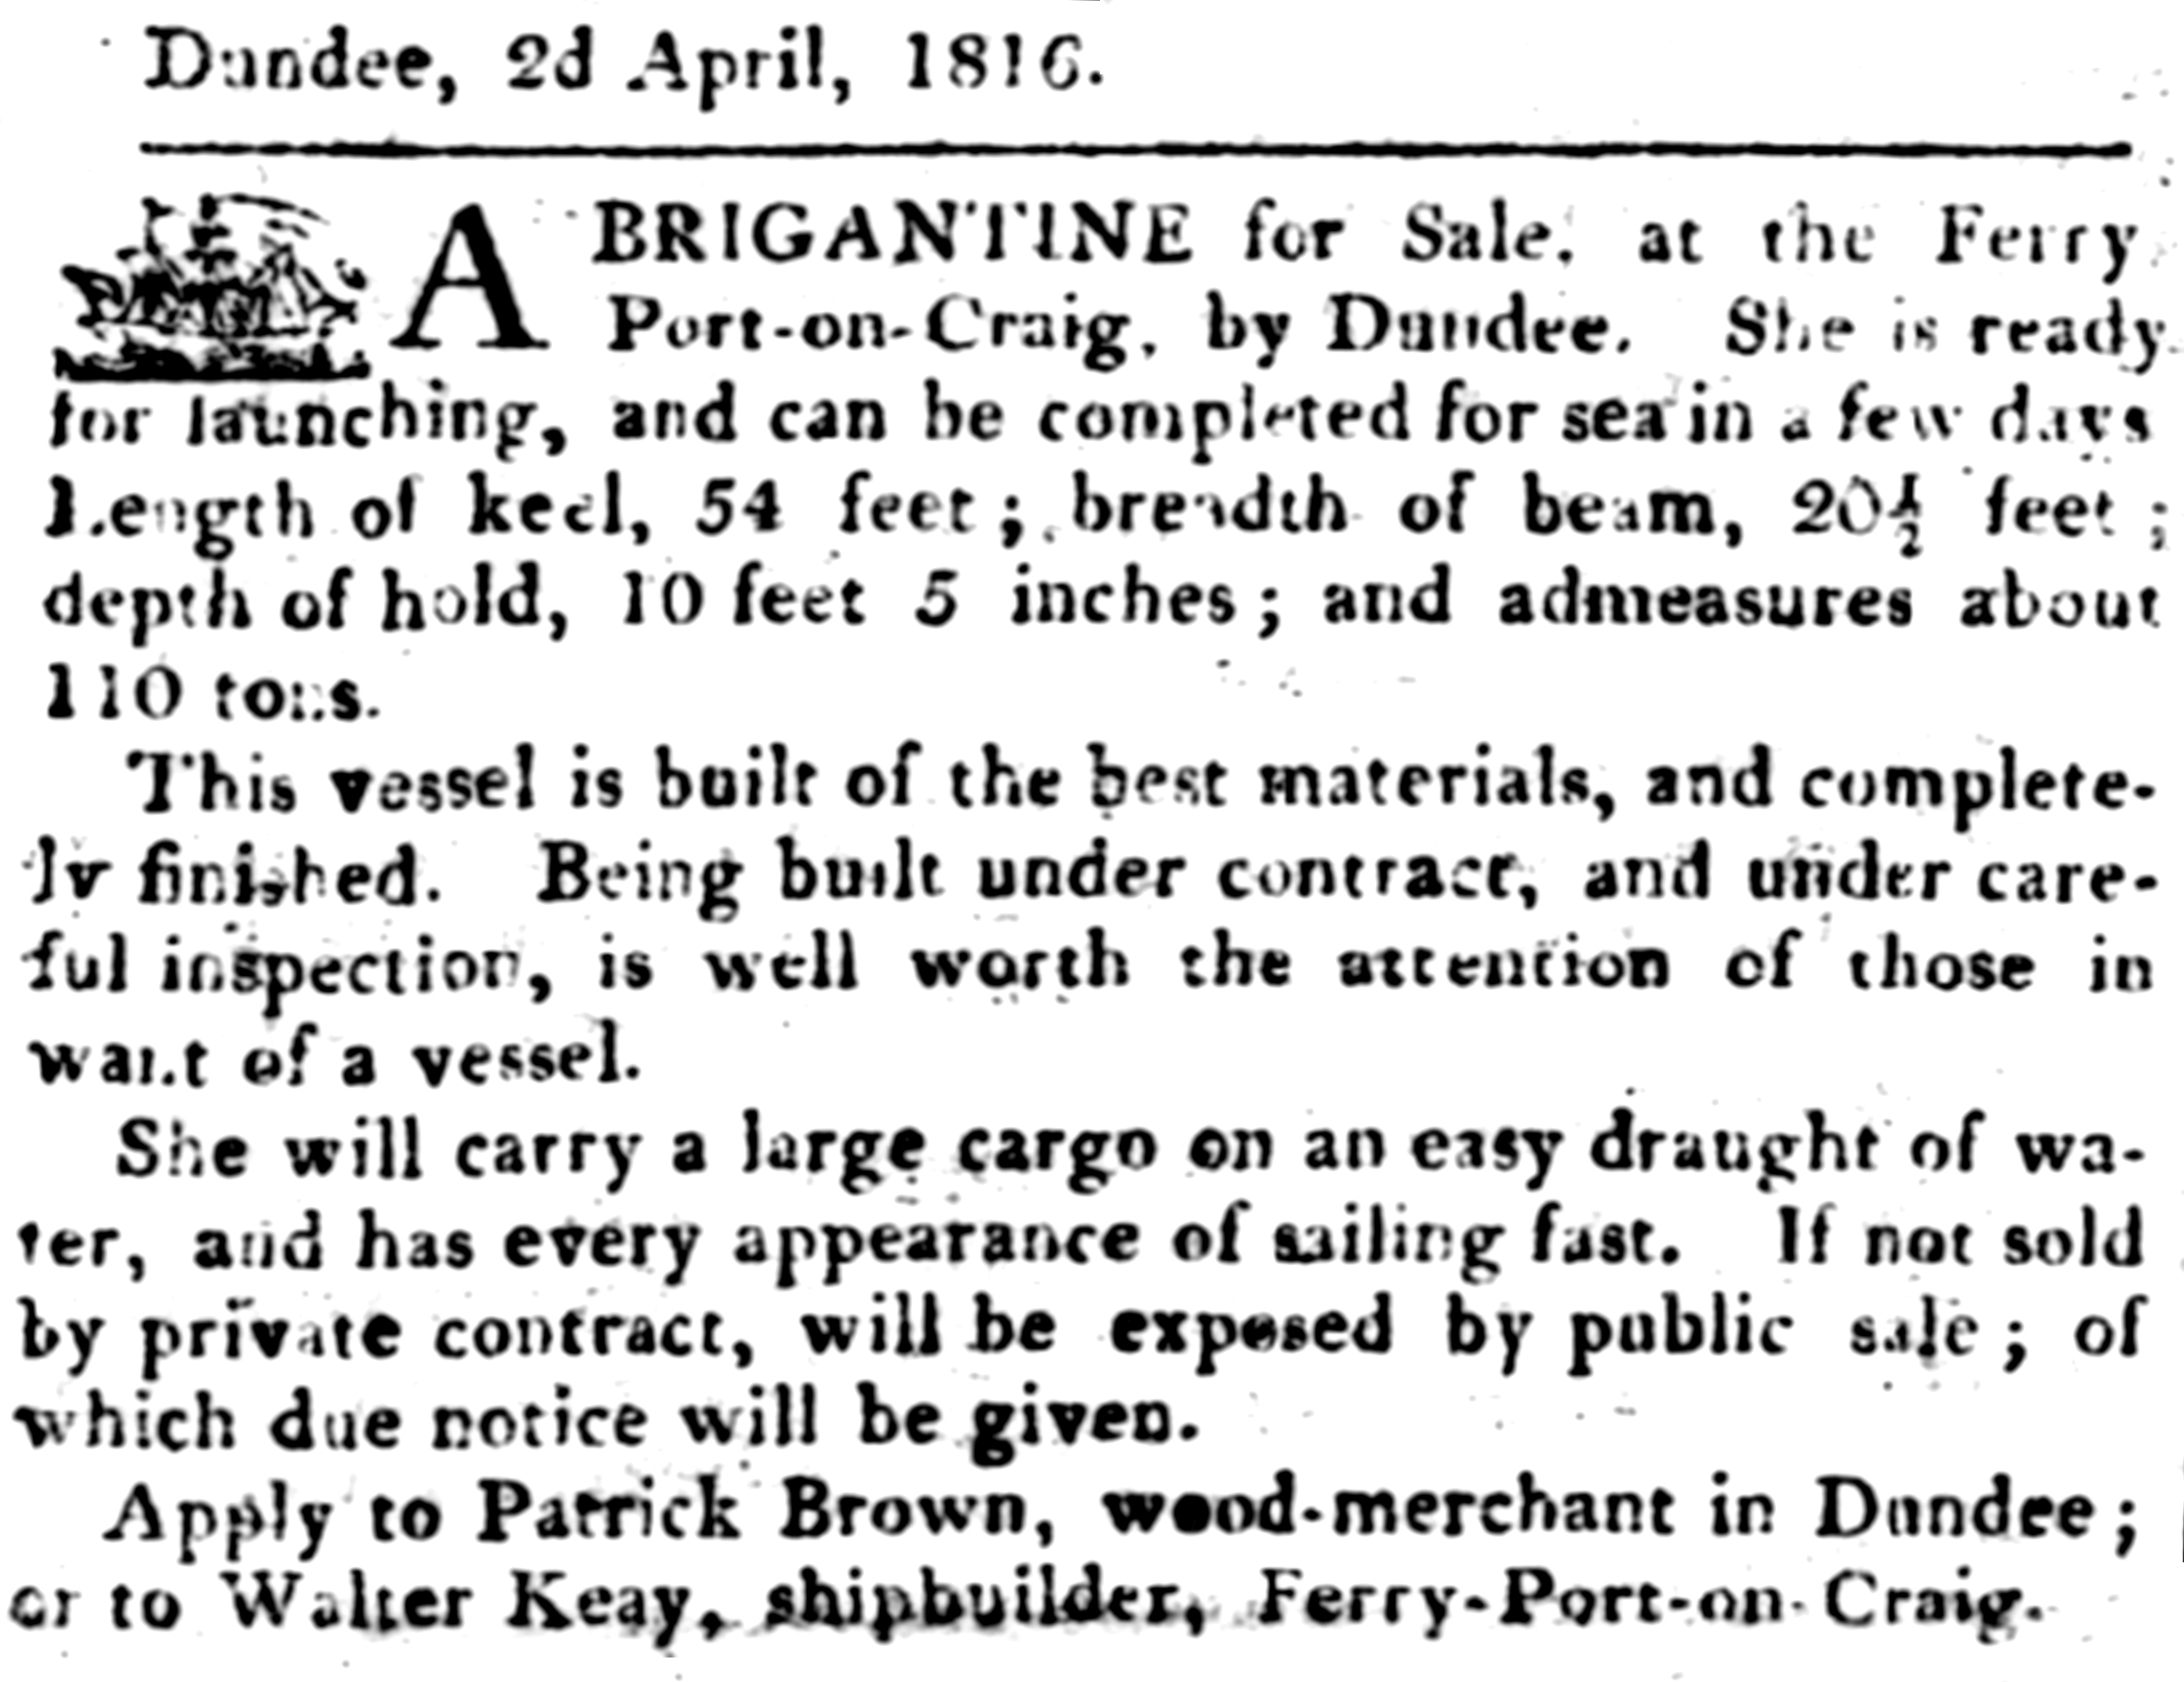 Tayport Heritage Trail - Board 2 - 1816 sale advert of a brigantine